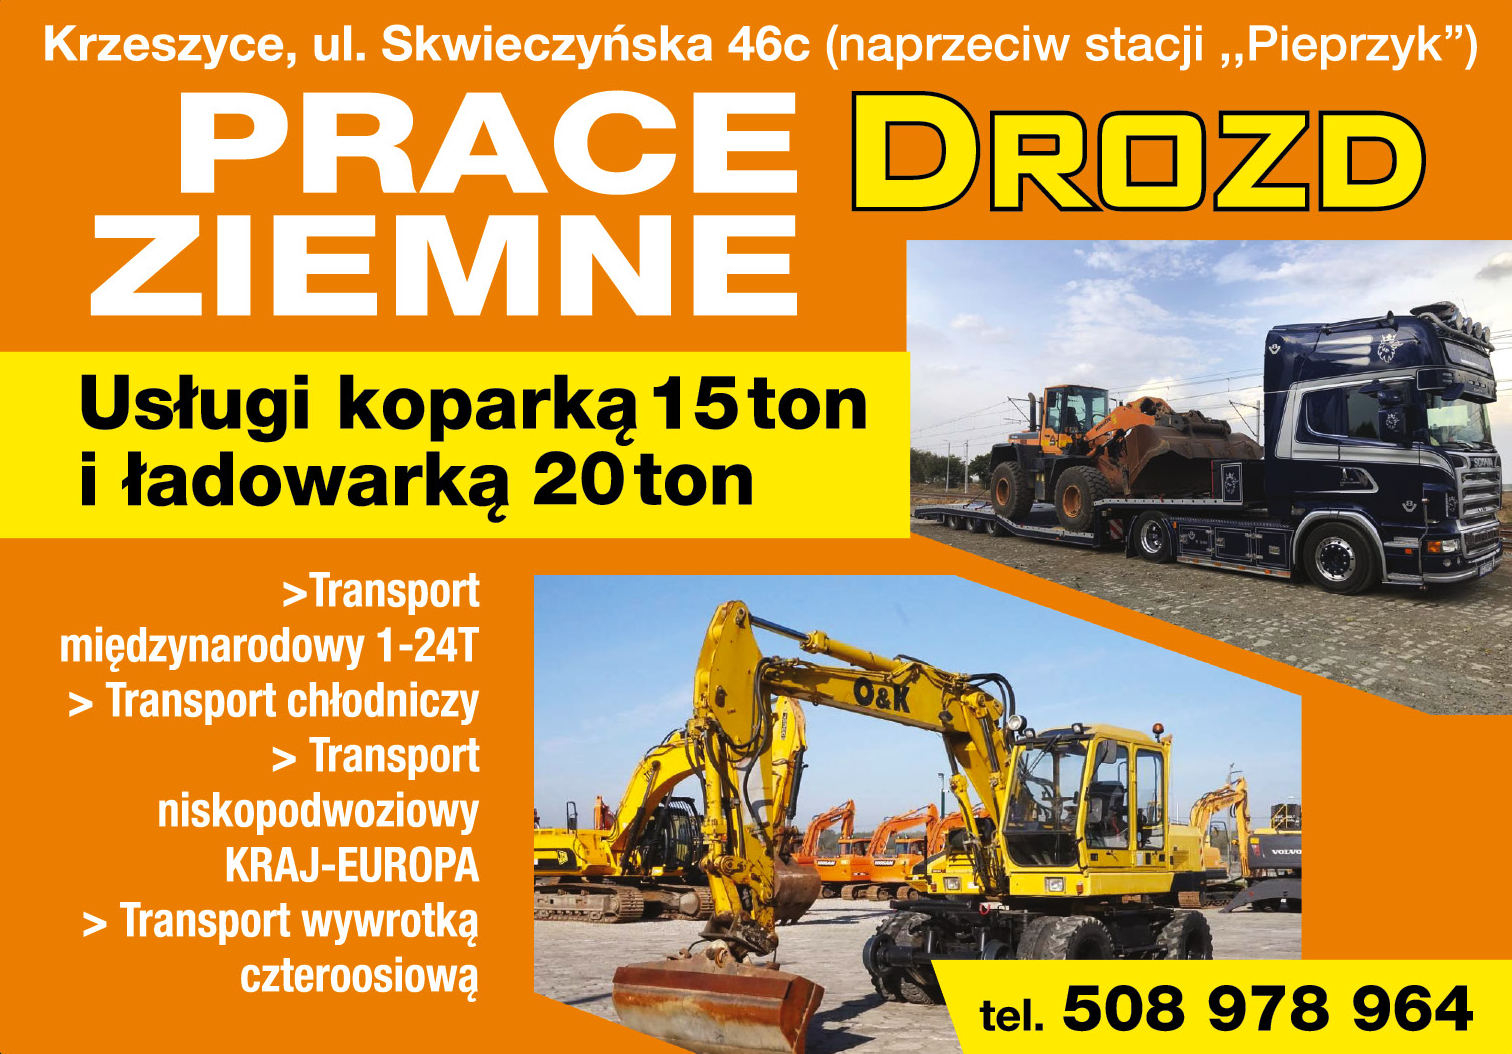 PRACE ZIEMNE DROZD Krzeszyce Usługi Koparką 15 Ton i Ładowarką 20 Ton / Transport Międzynarodowy